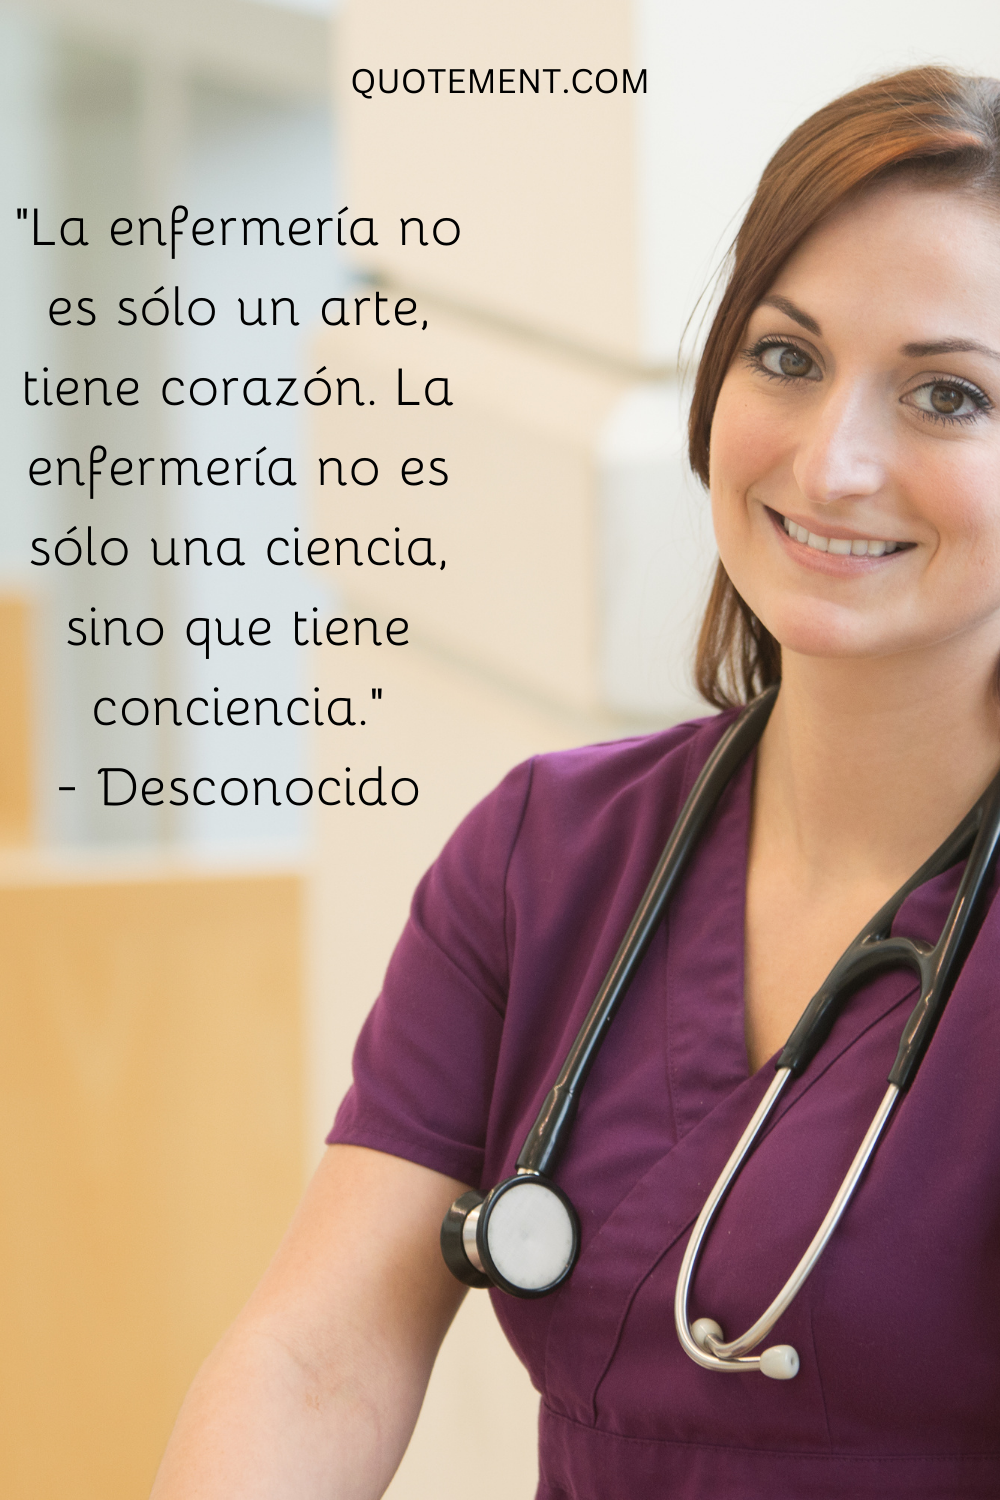 "La enfermería no es sólo un arte, tiene corazón. La enfermería no es sólo una ciencia, tiene conciencia". - Desconocido